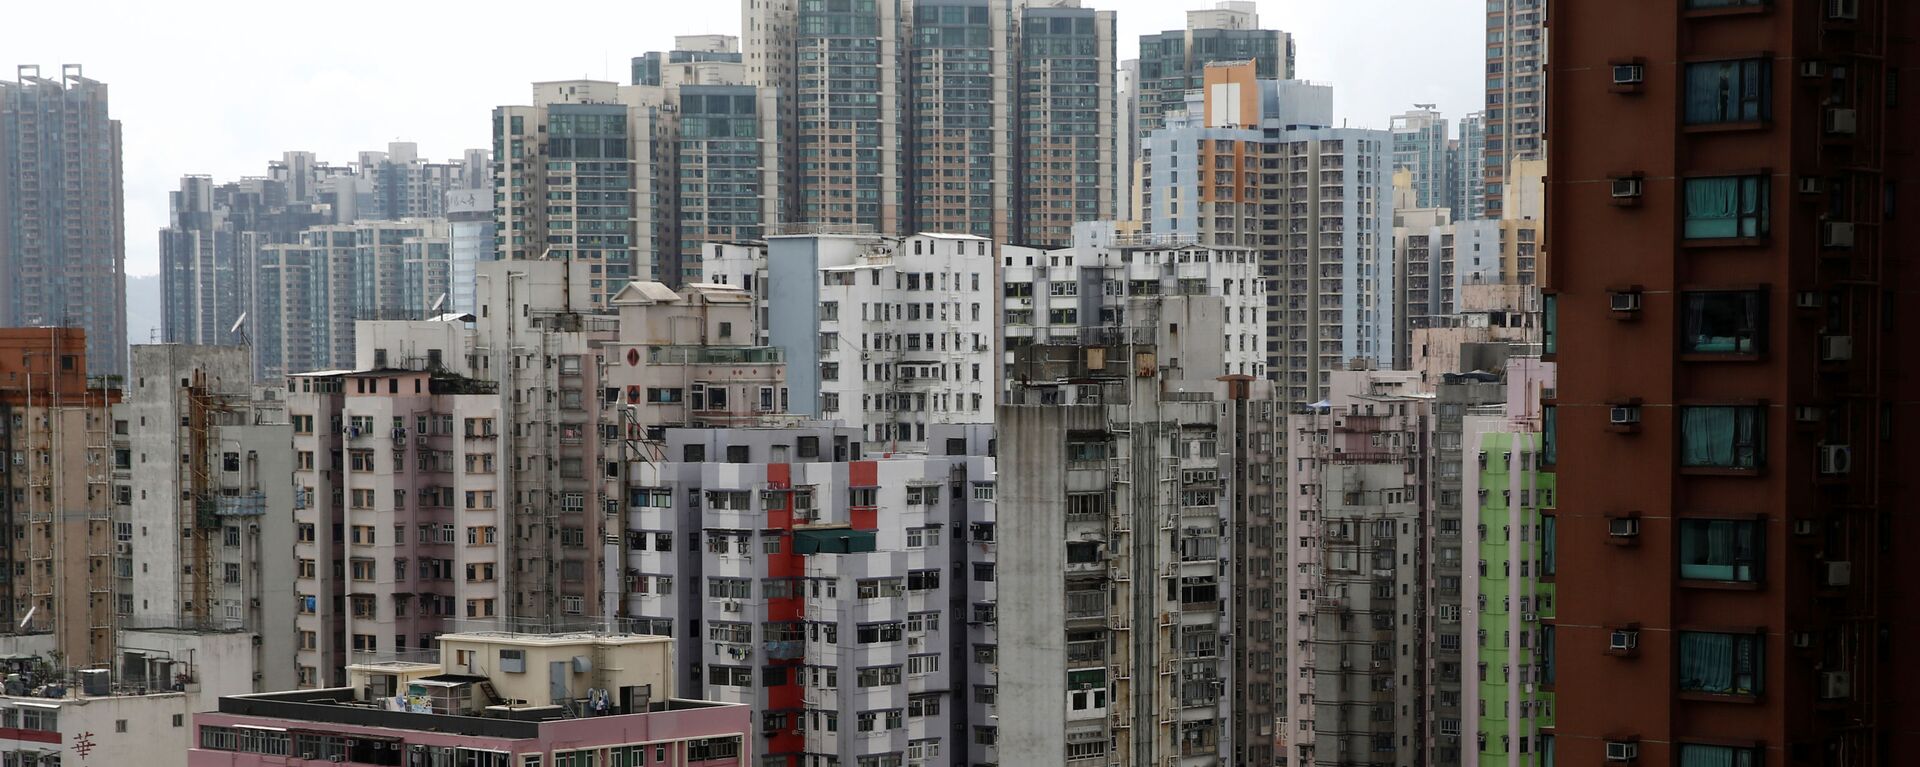 Các tòa nhà chung cư ở Hồng Kông, Trung Quốc - Sputnik Việt Nam, 1920, 05.10.2021